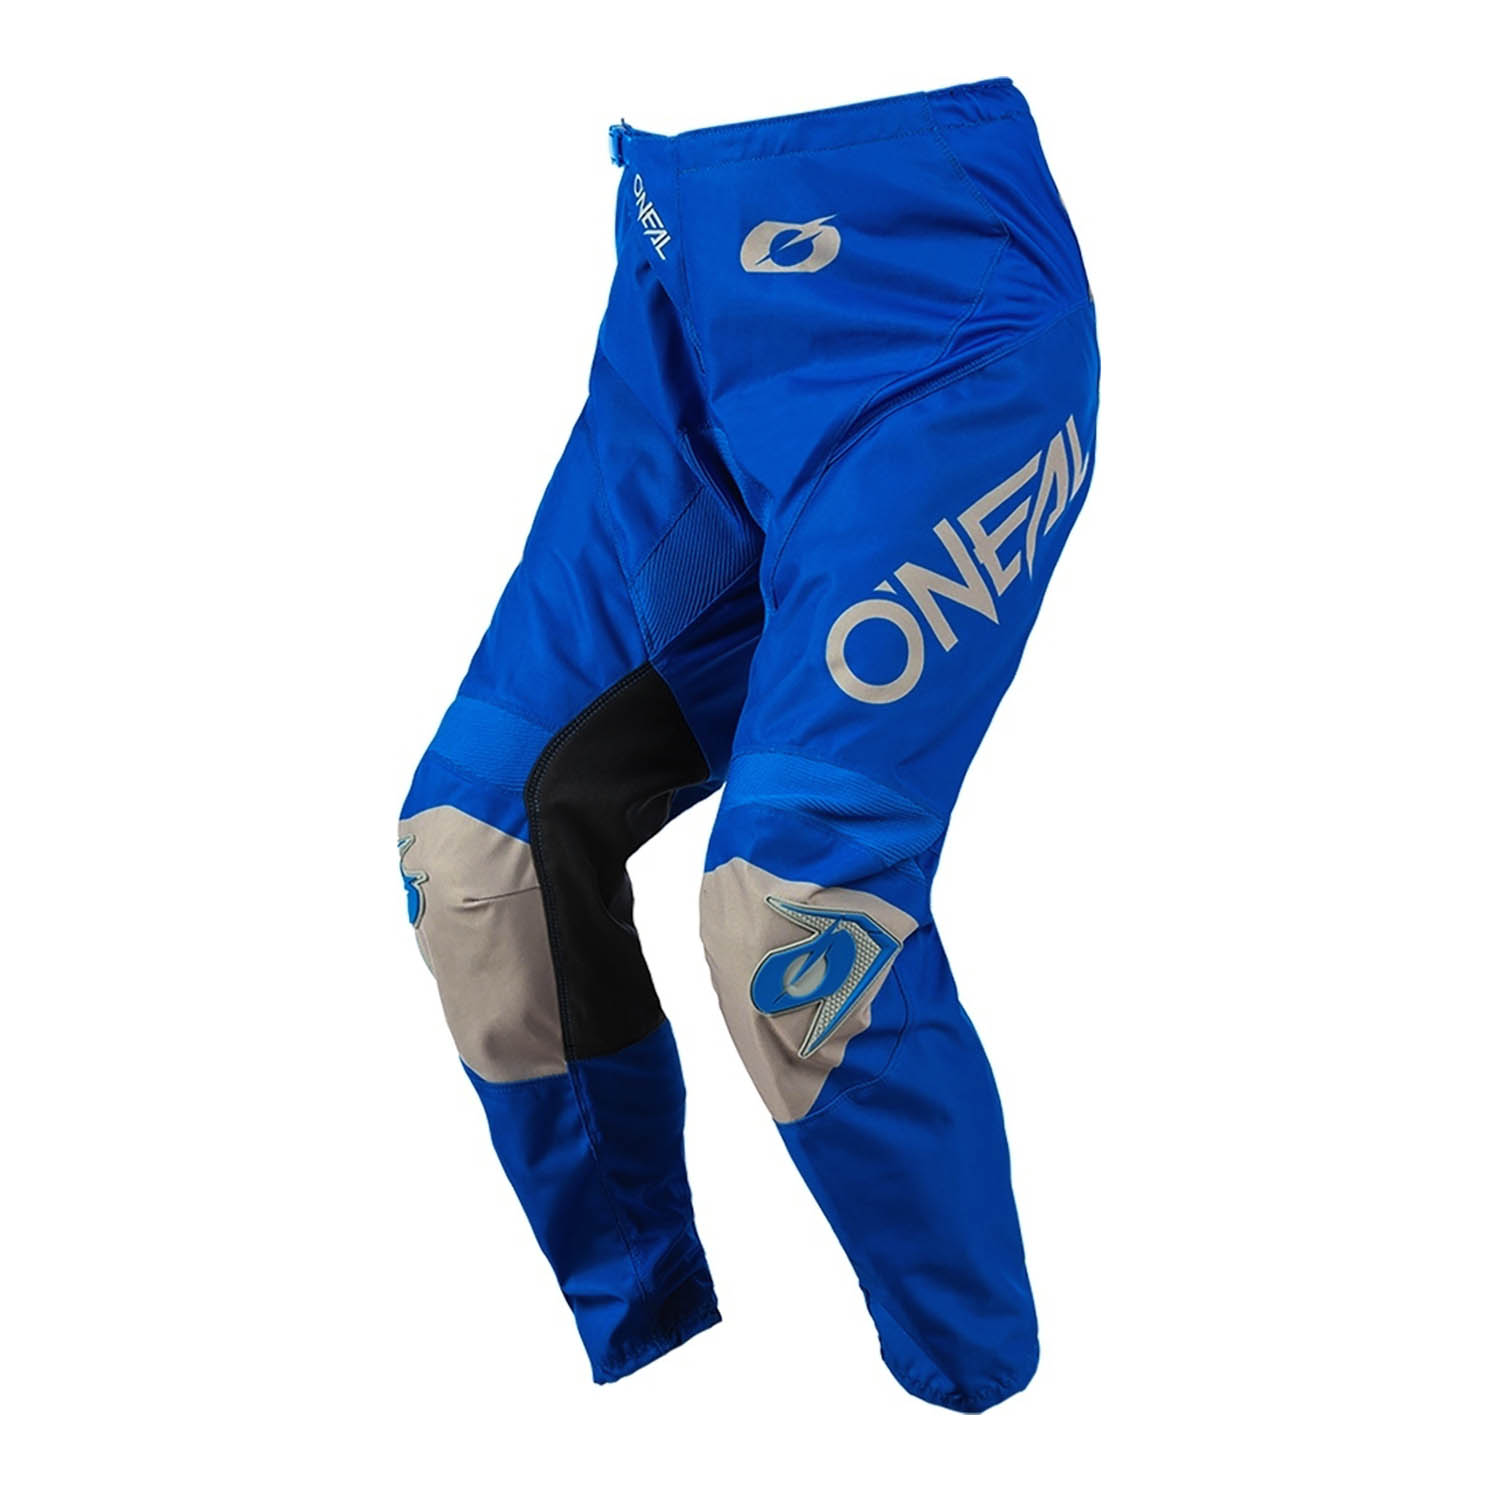 Штаны для мотокросса O'NEAL MATRIX PANTS RIDEWEAR сине-серого цвета купить по низкой цене